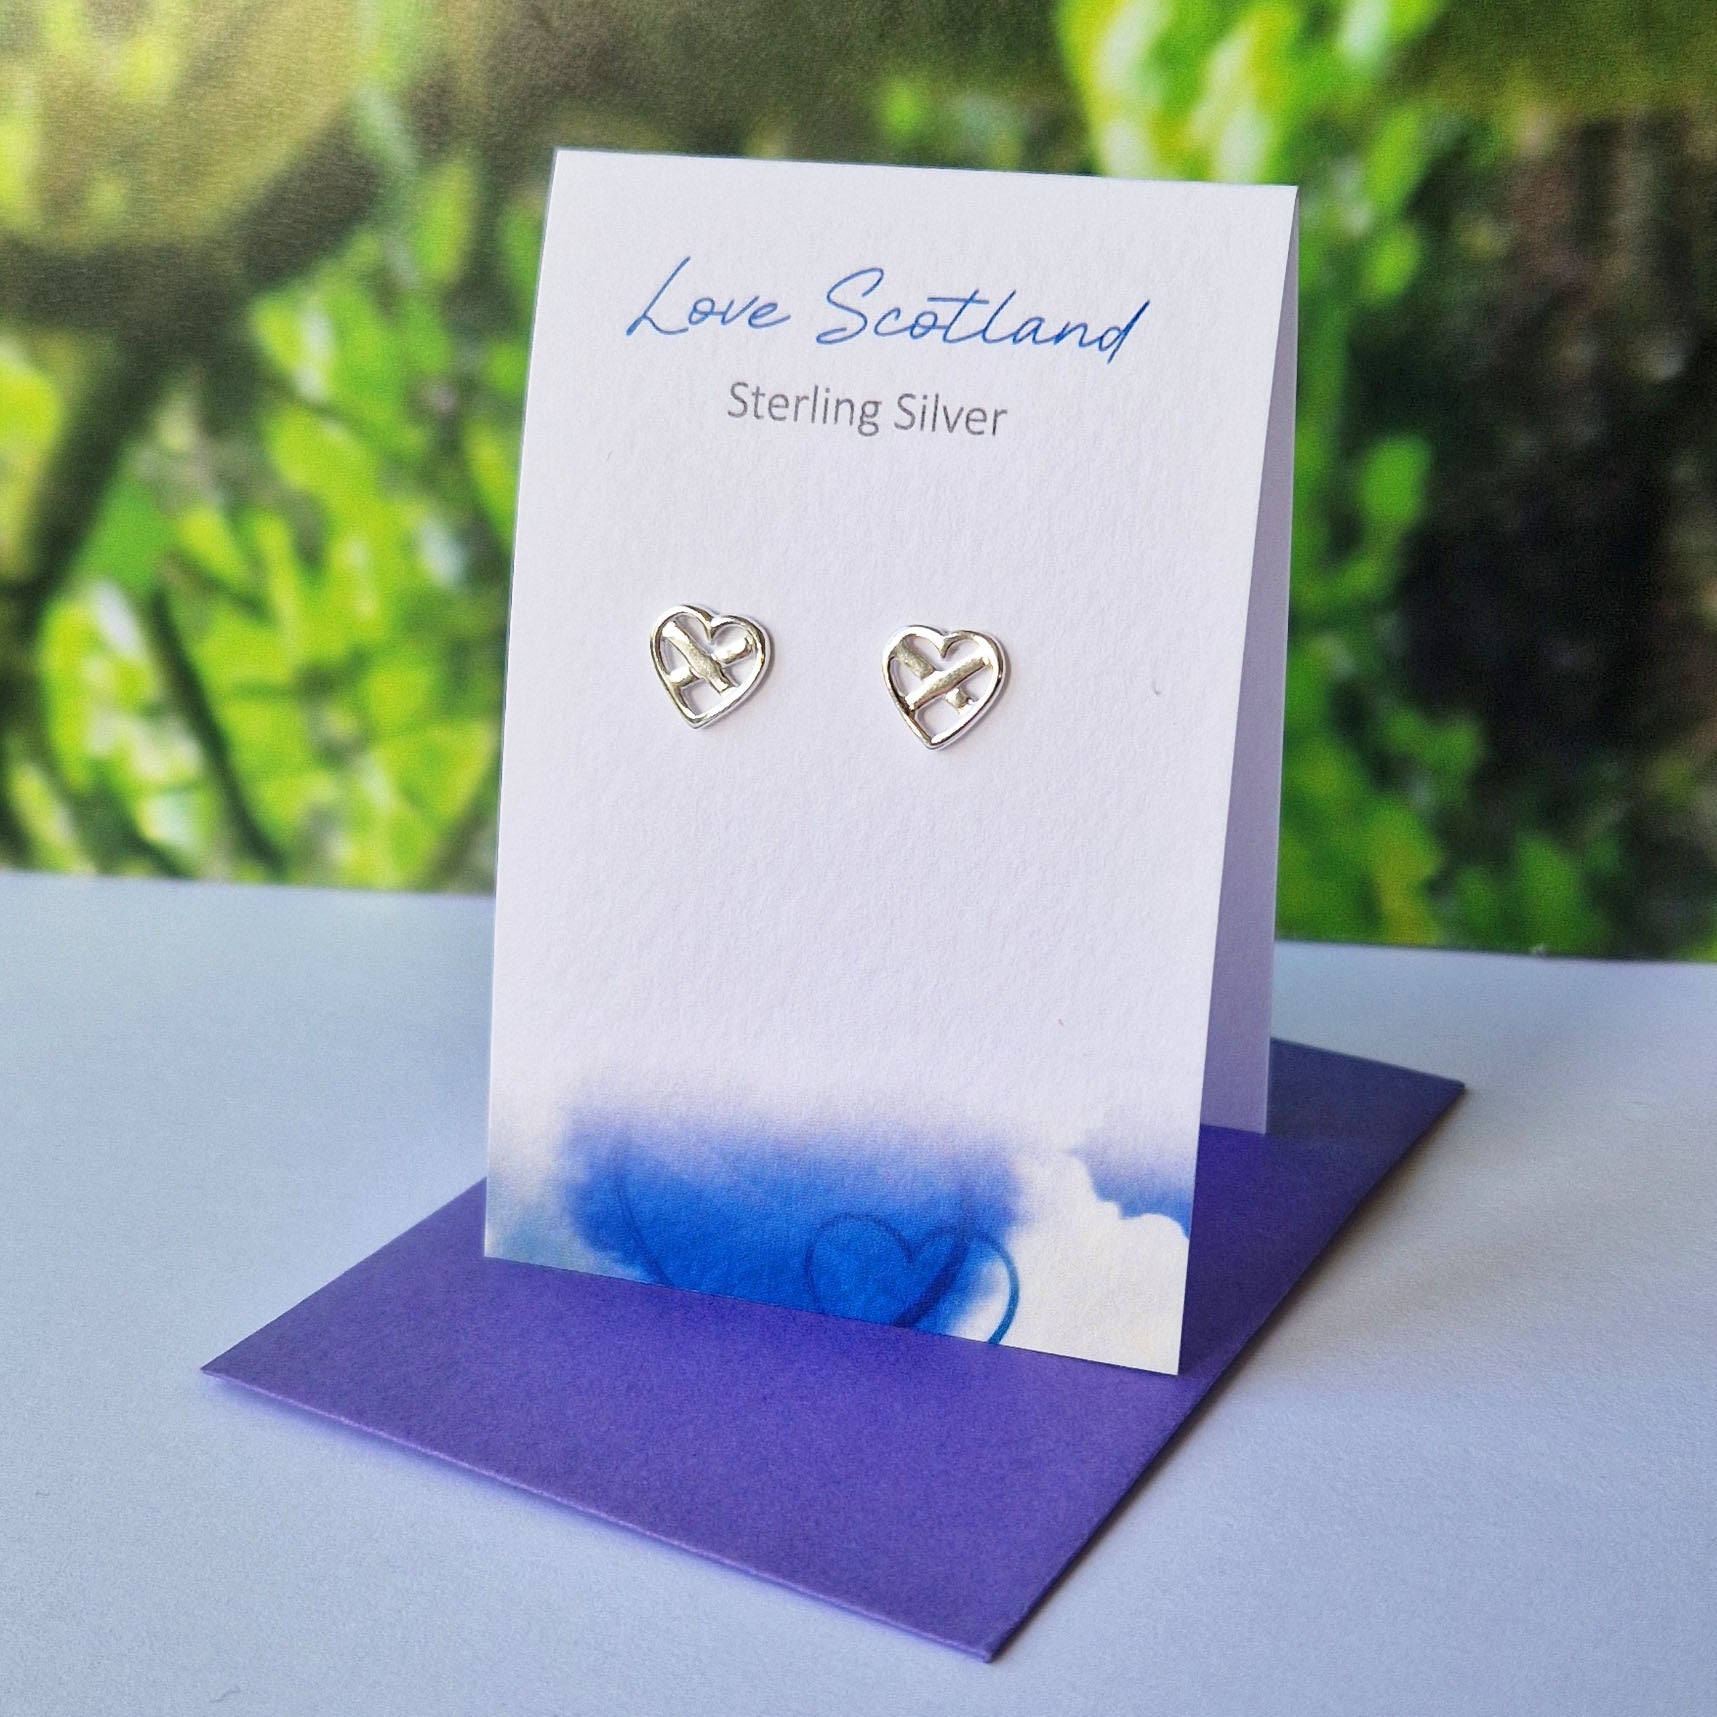 Love Scotland Stud Earrings